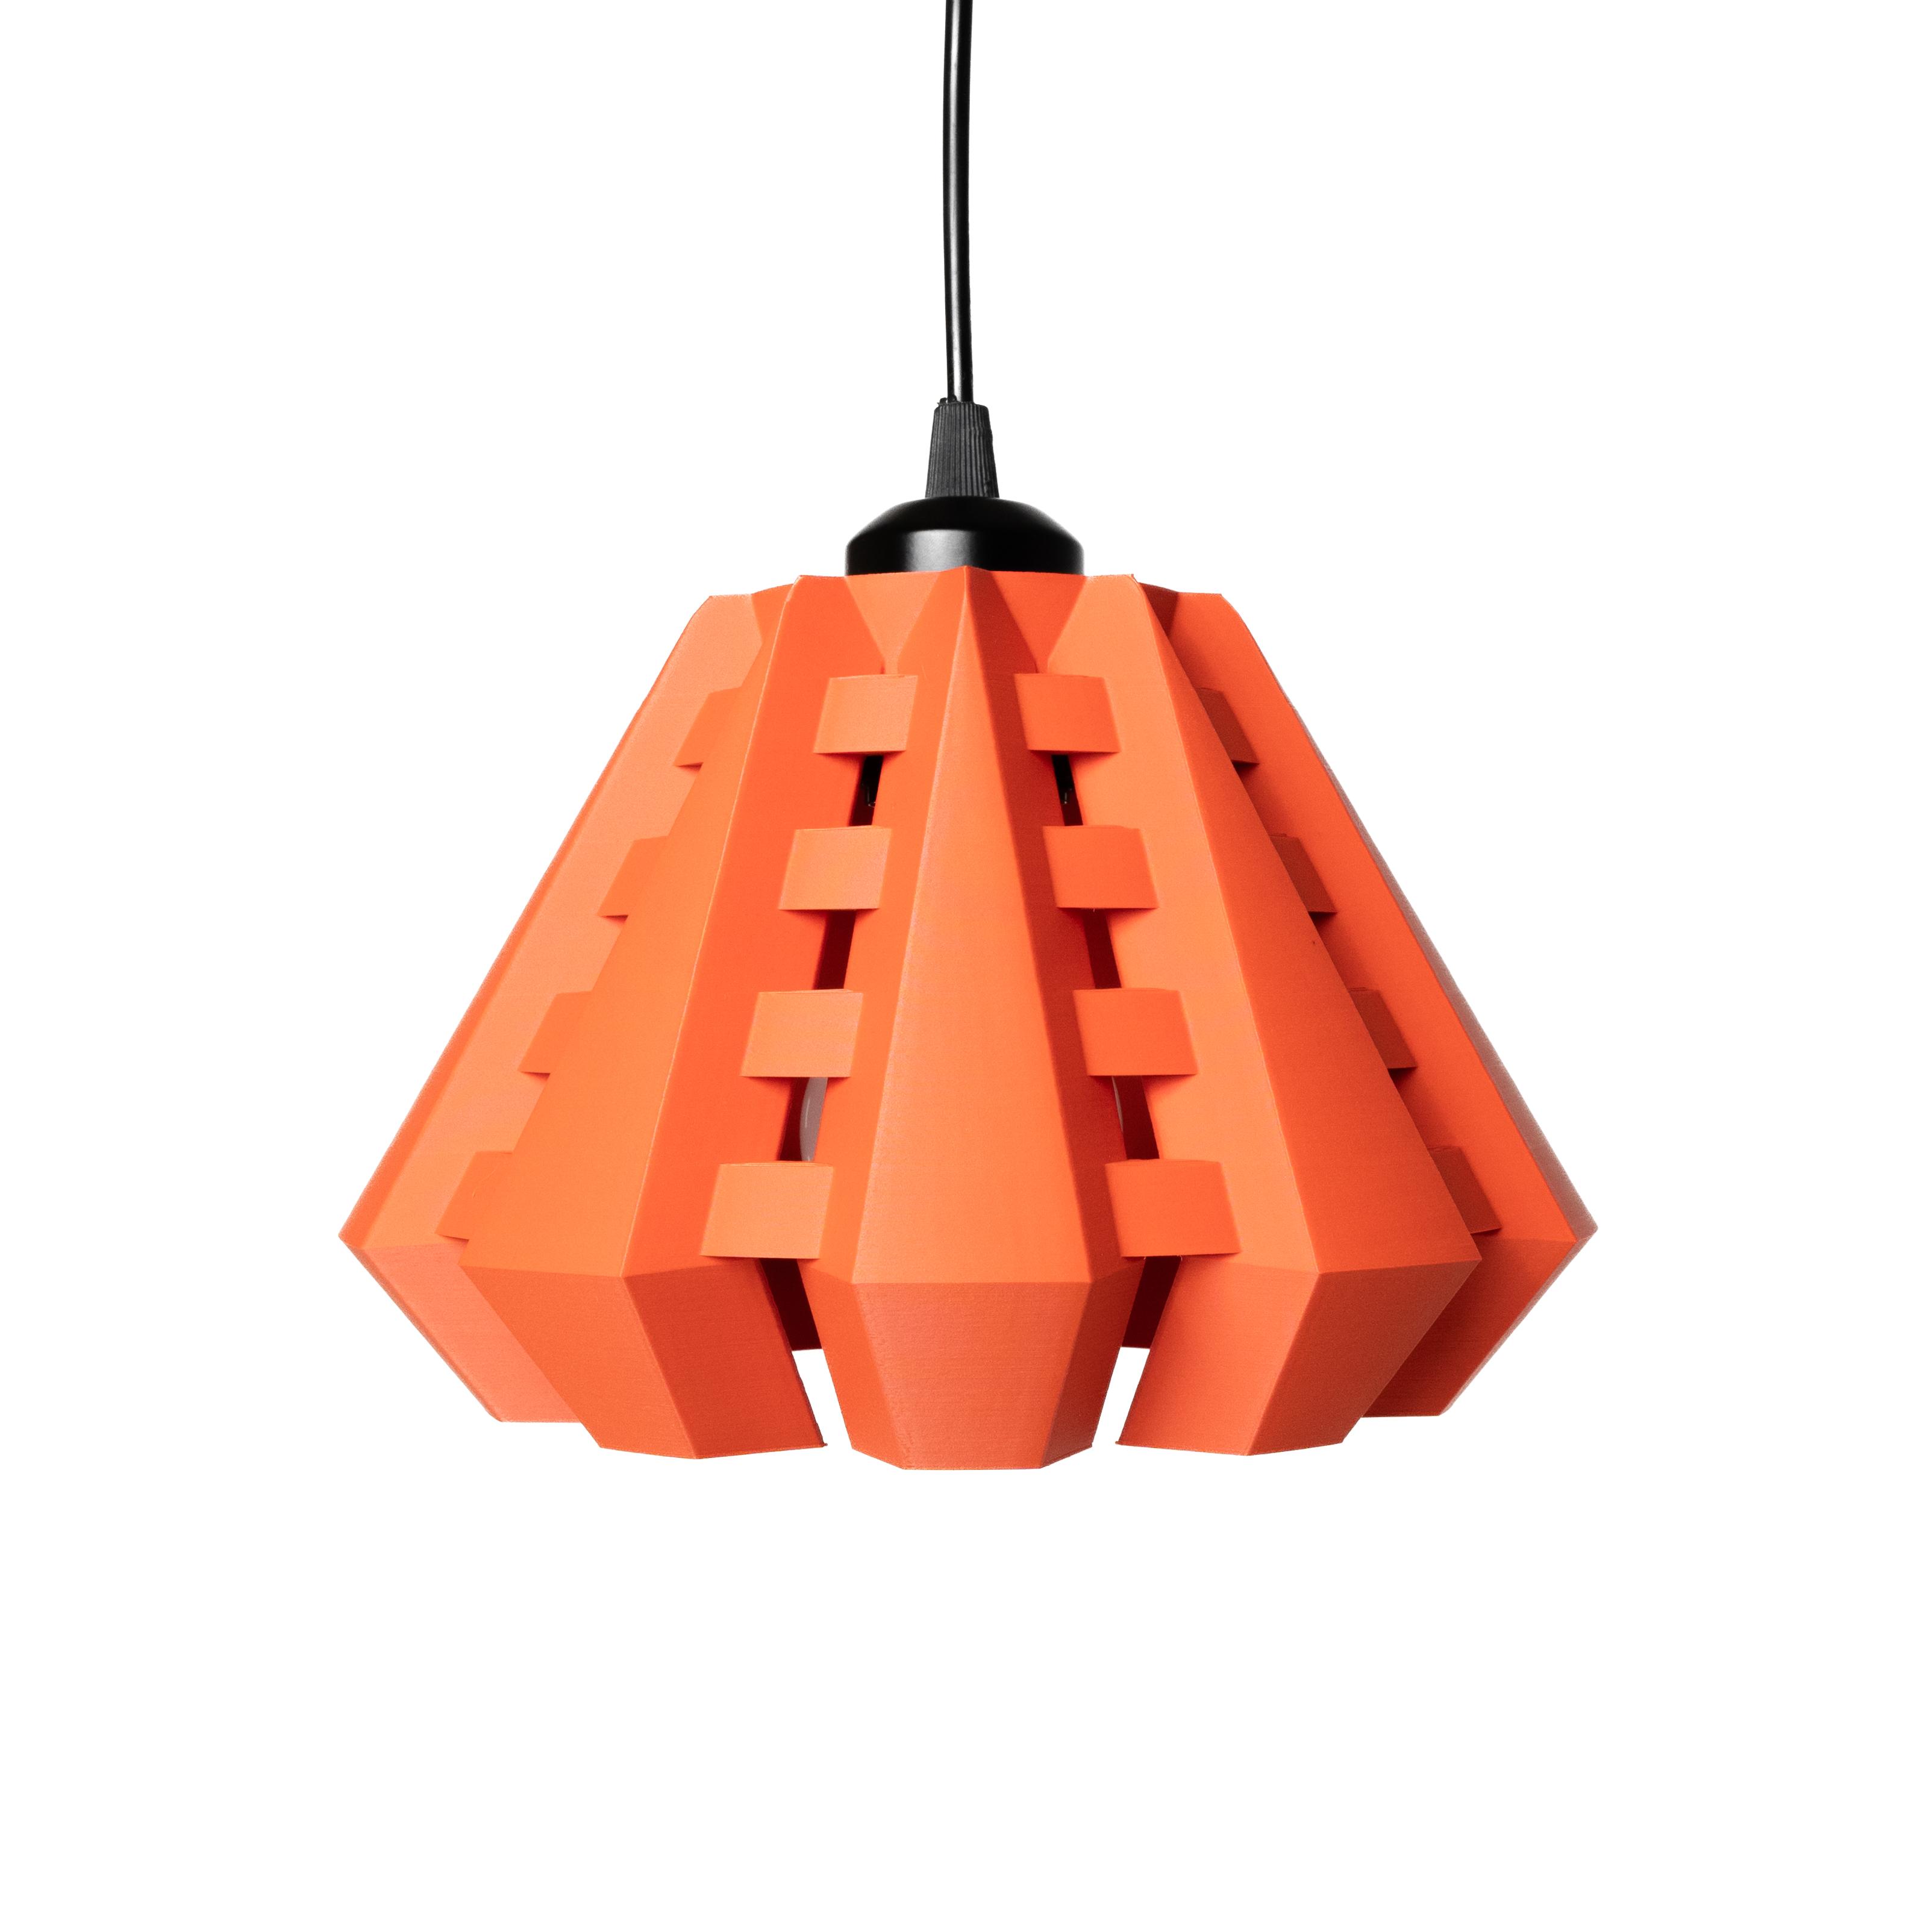 The Aniko Pendant Lamp | Modern and Unique Home Decor 3d model